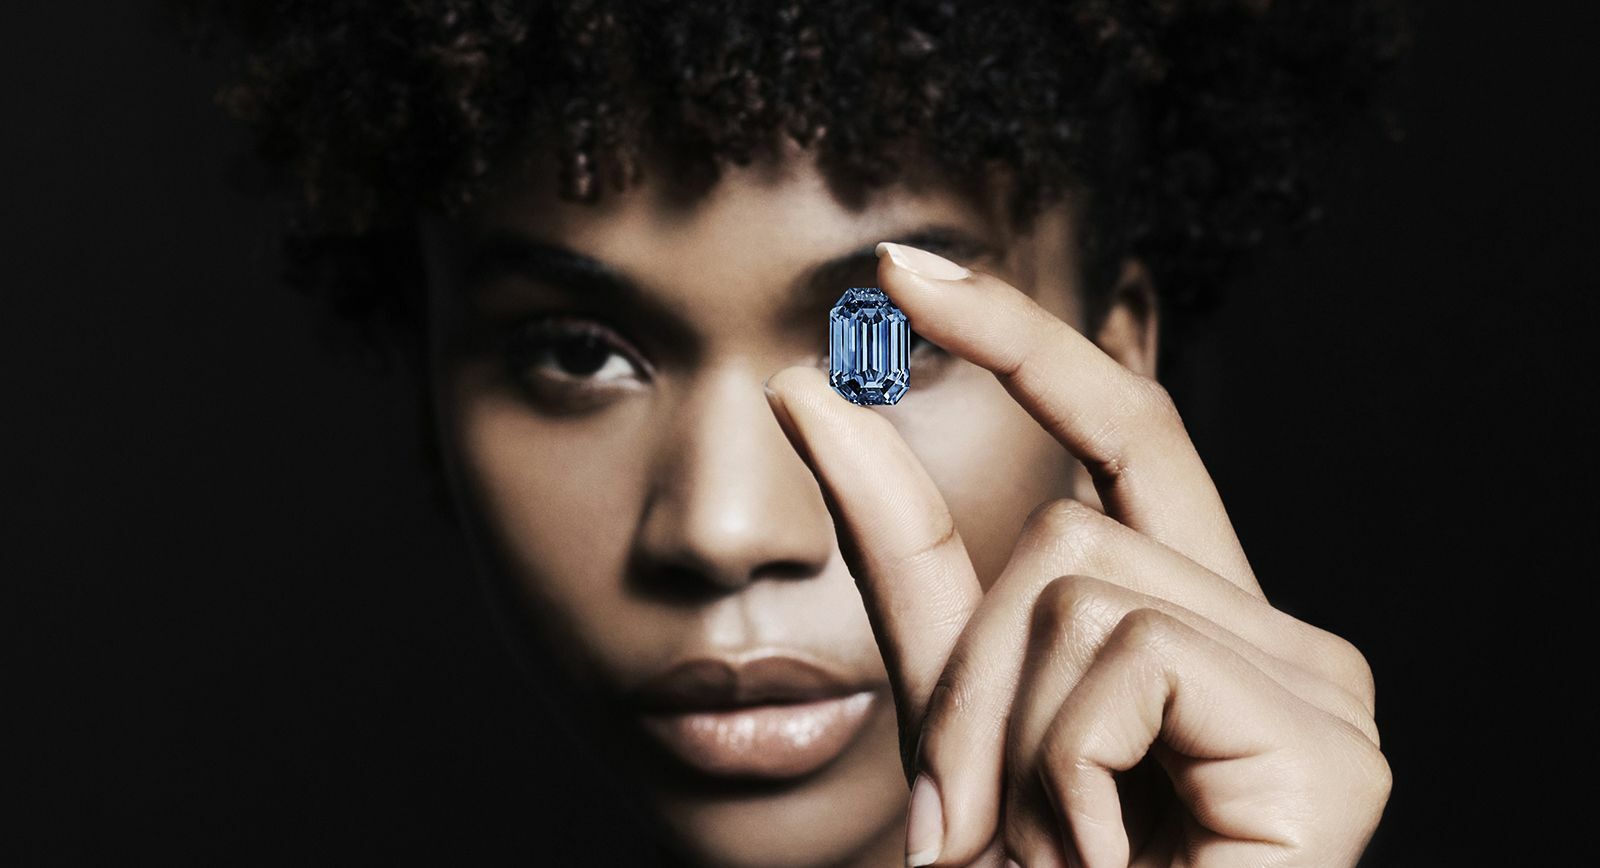 Голубой бриллиант De Beers Cullinan Blue Diamond весом 15,10 карата выставлен на аукцион Sotheby's в Гонконге